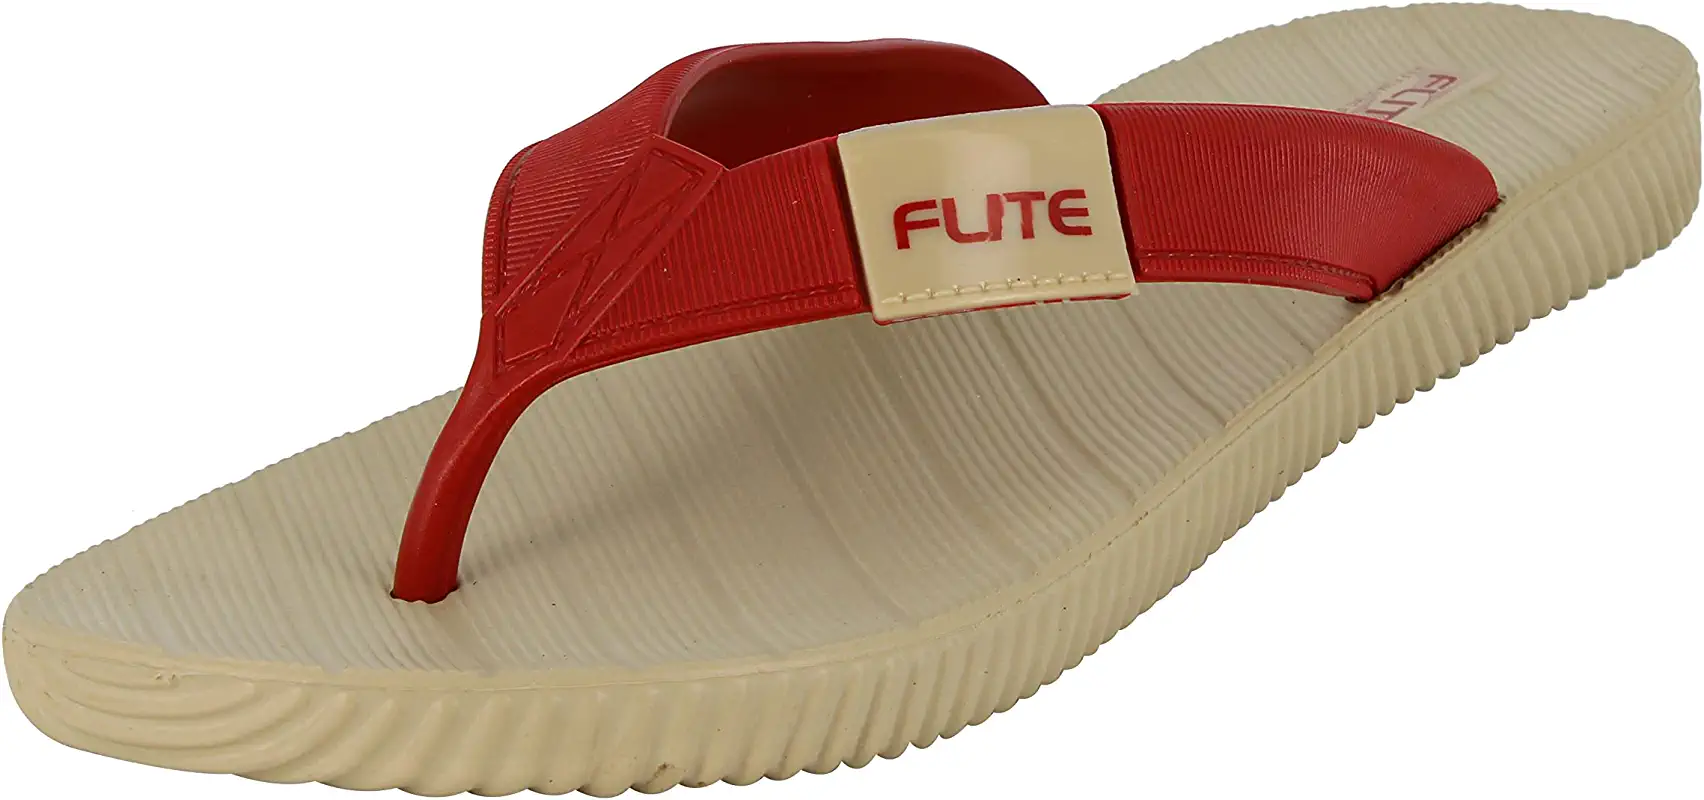 Flite women's slippers